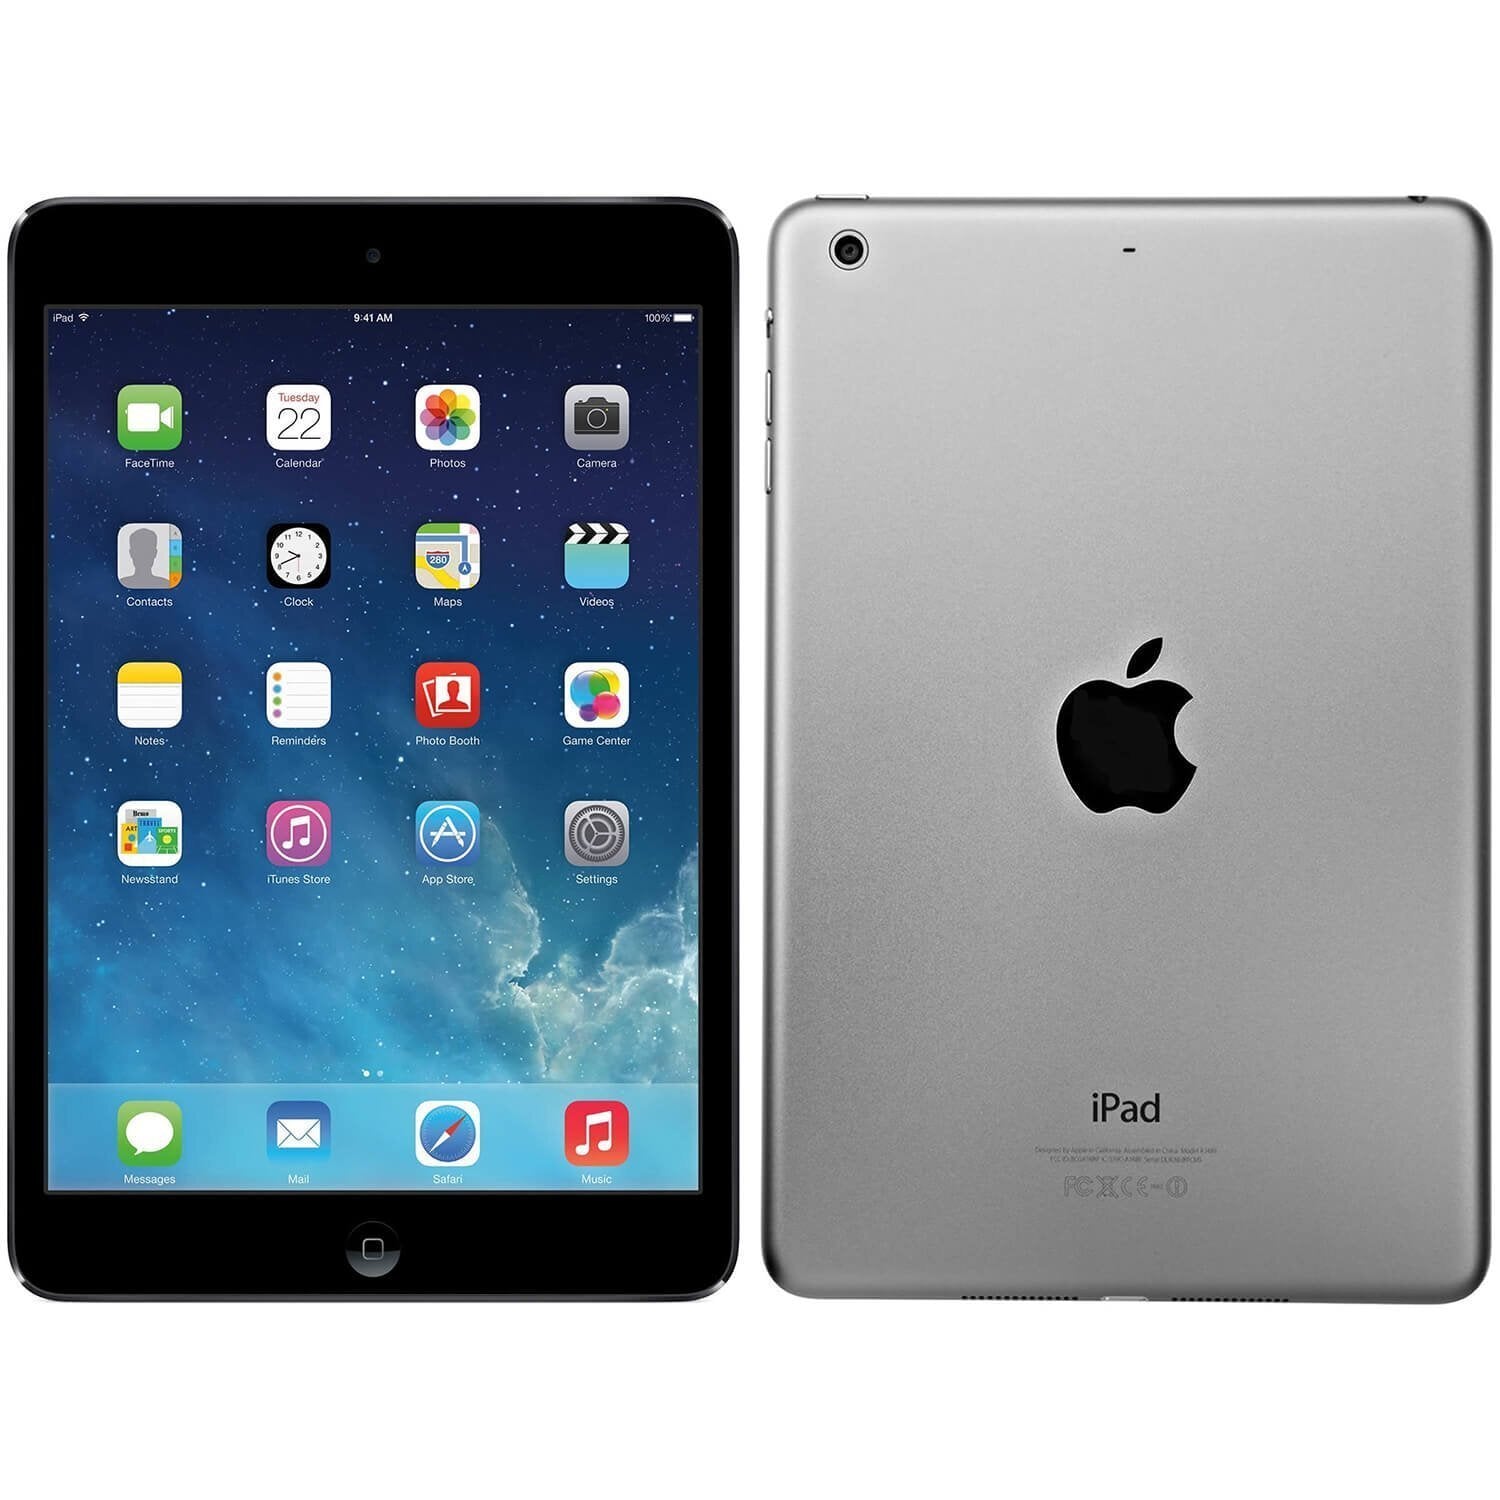 apple-2012-9.7-inch-ipad-3-a1416-silver/black-4